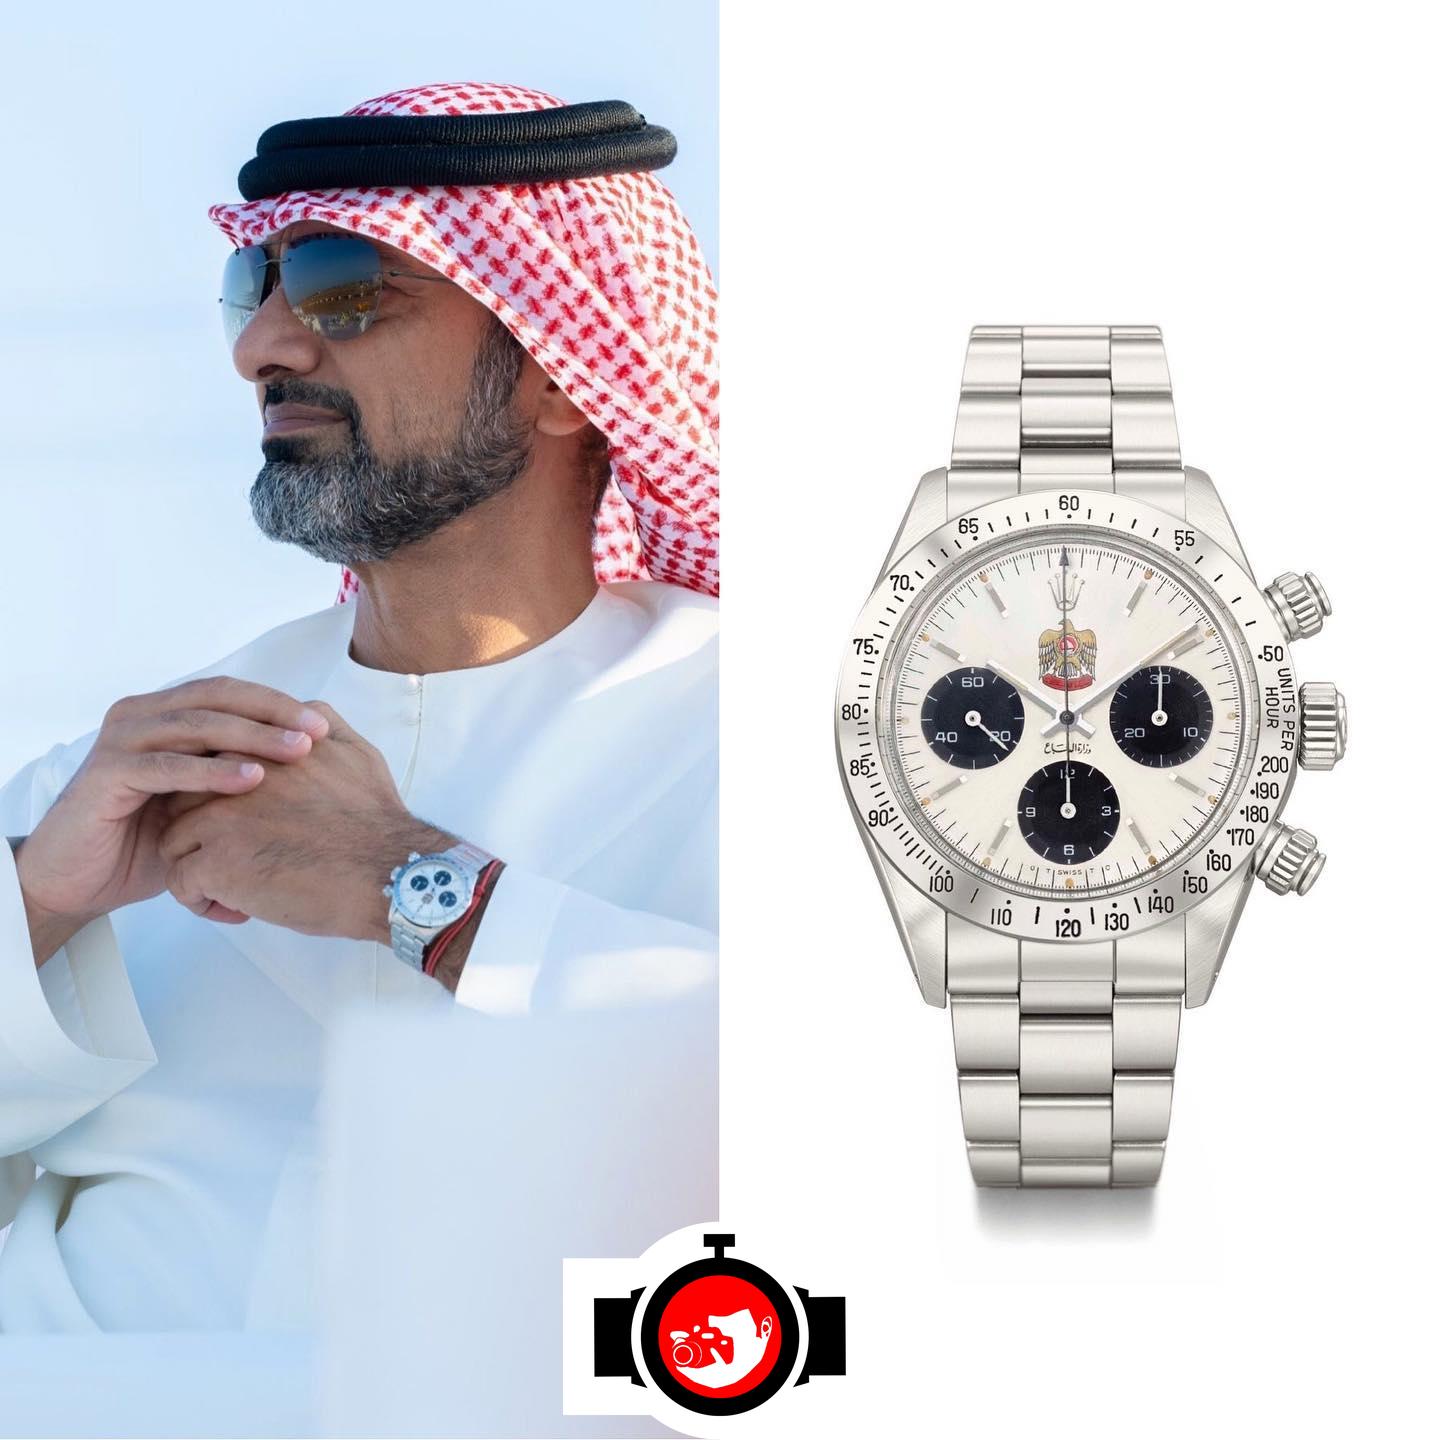 royal Ammar bin Humaid Al Nuaimi spotted wearing a Rolex 6265